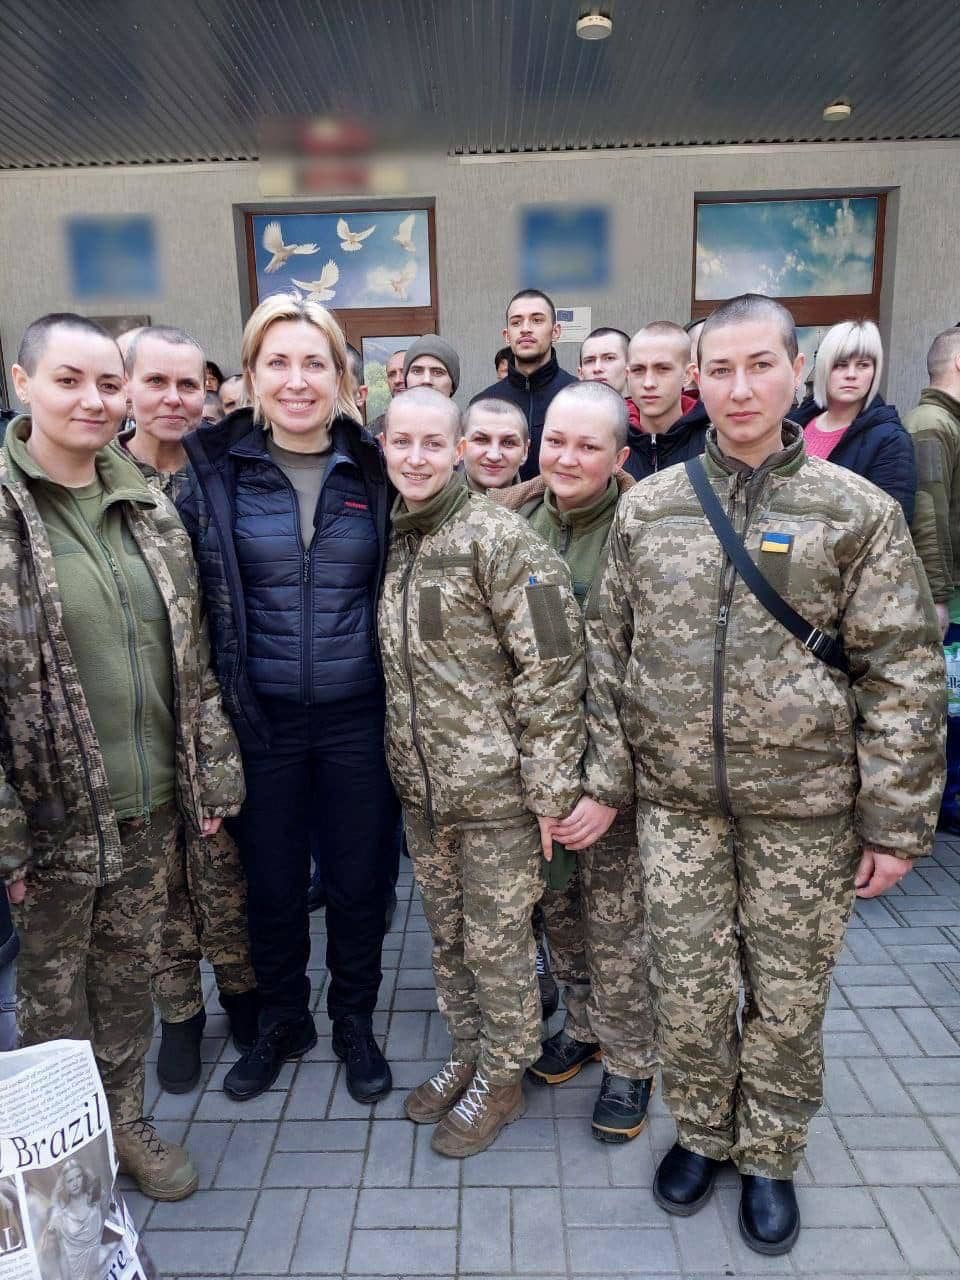 Mujeres soldado ucranianas liberadas por Rusia, con las cabezas rapadas: «Lo hicieron en señal de humillación y desprecio»